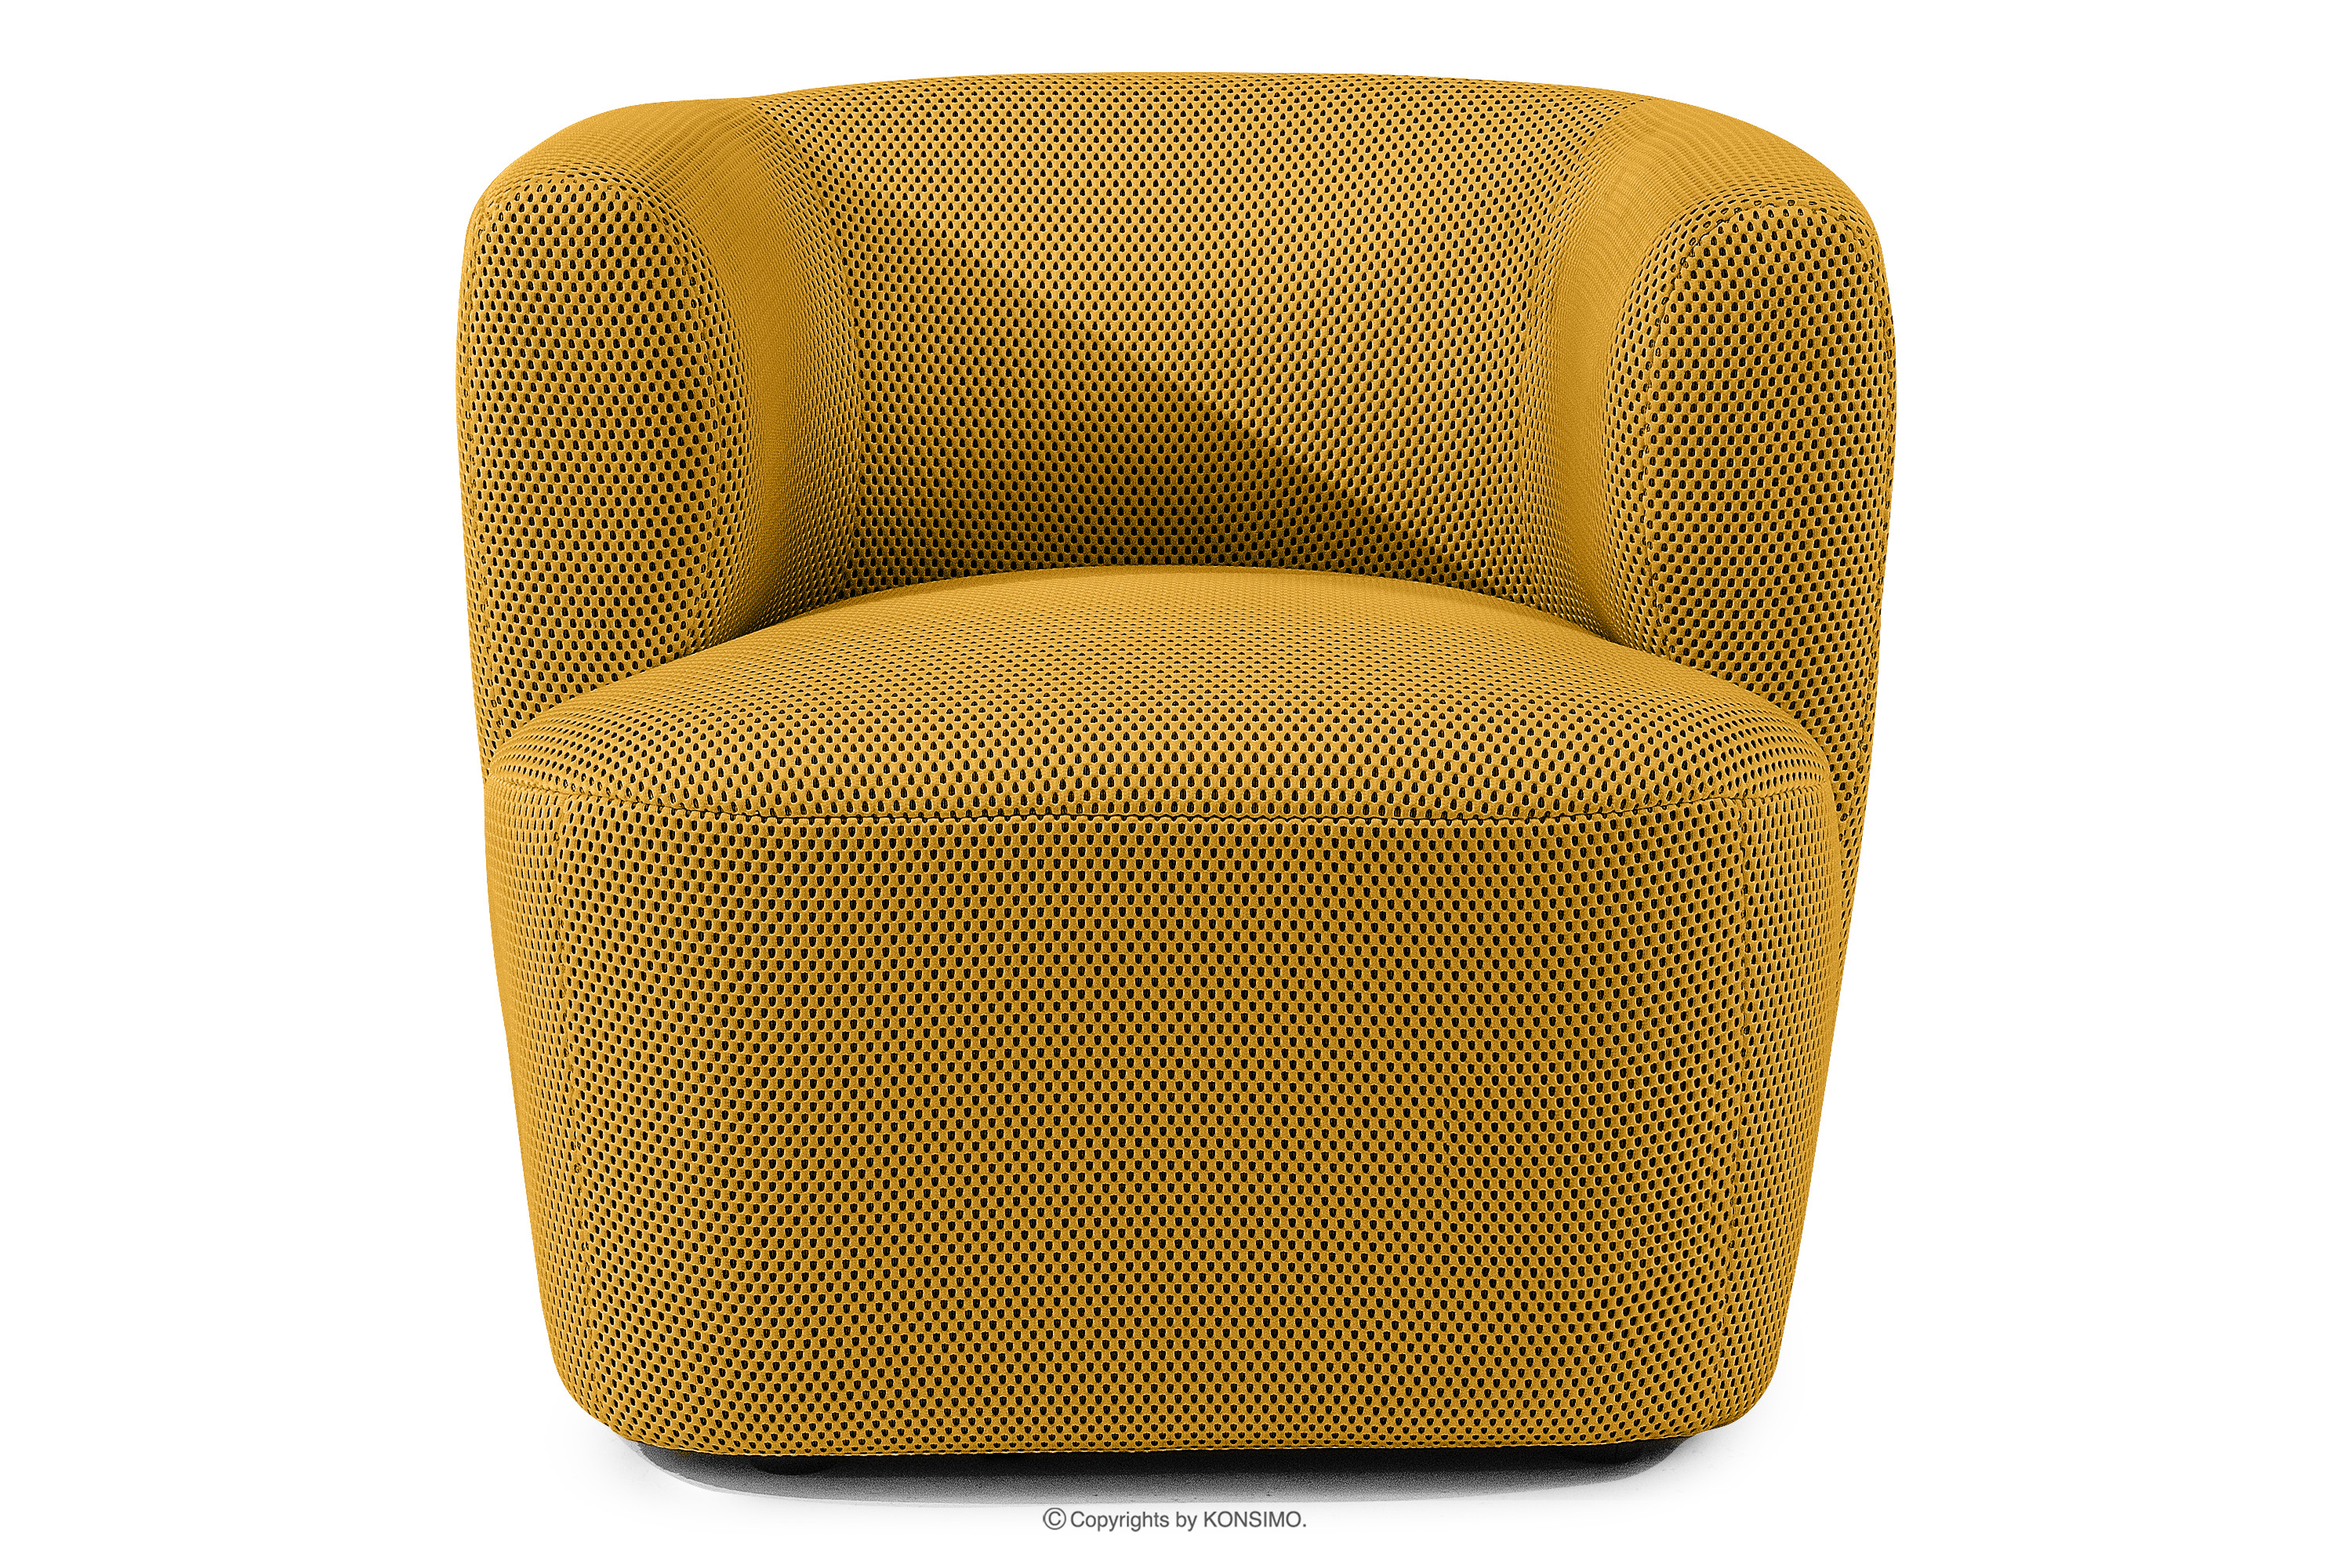 Nowoczesny fotel w tkaninie 3d żółty